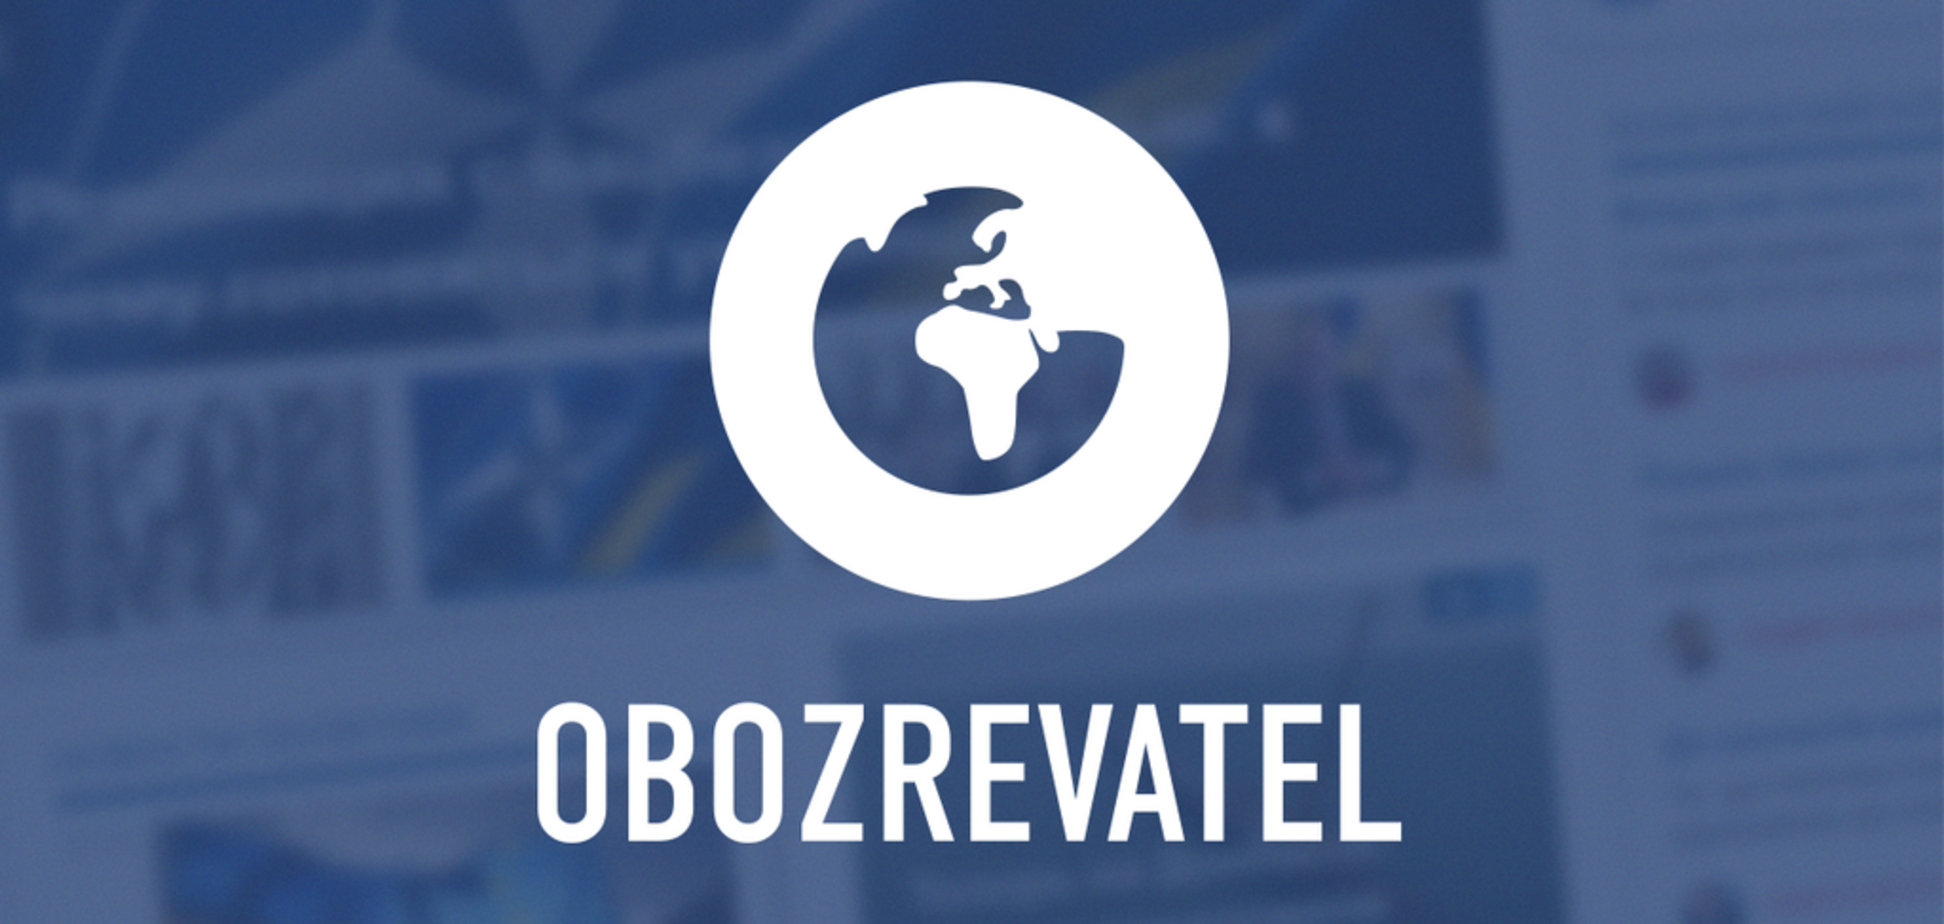 Гаджет — за чтение новостей: OBOZREVATEL запустил новый конкурс